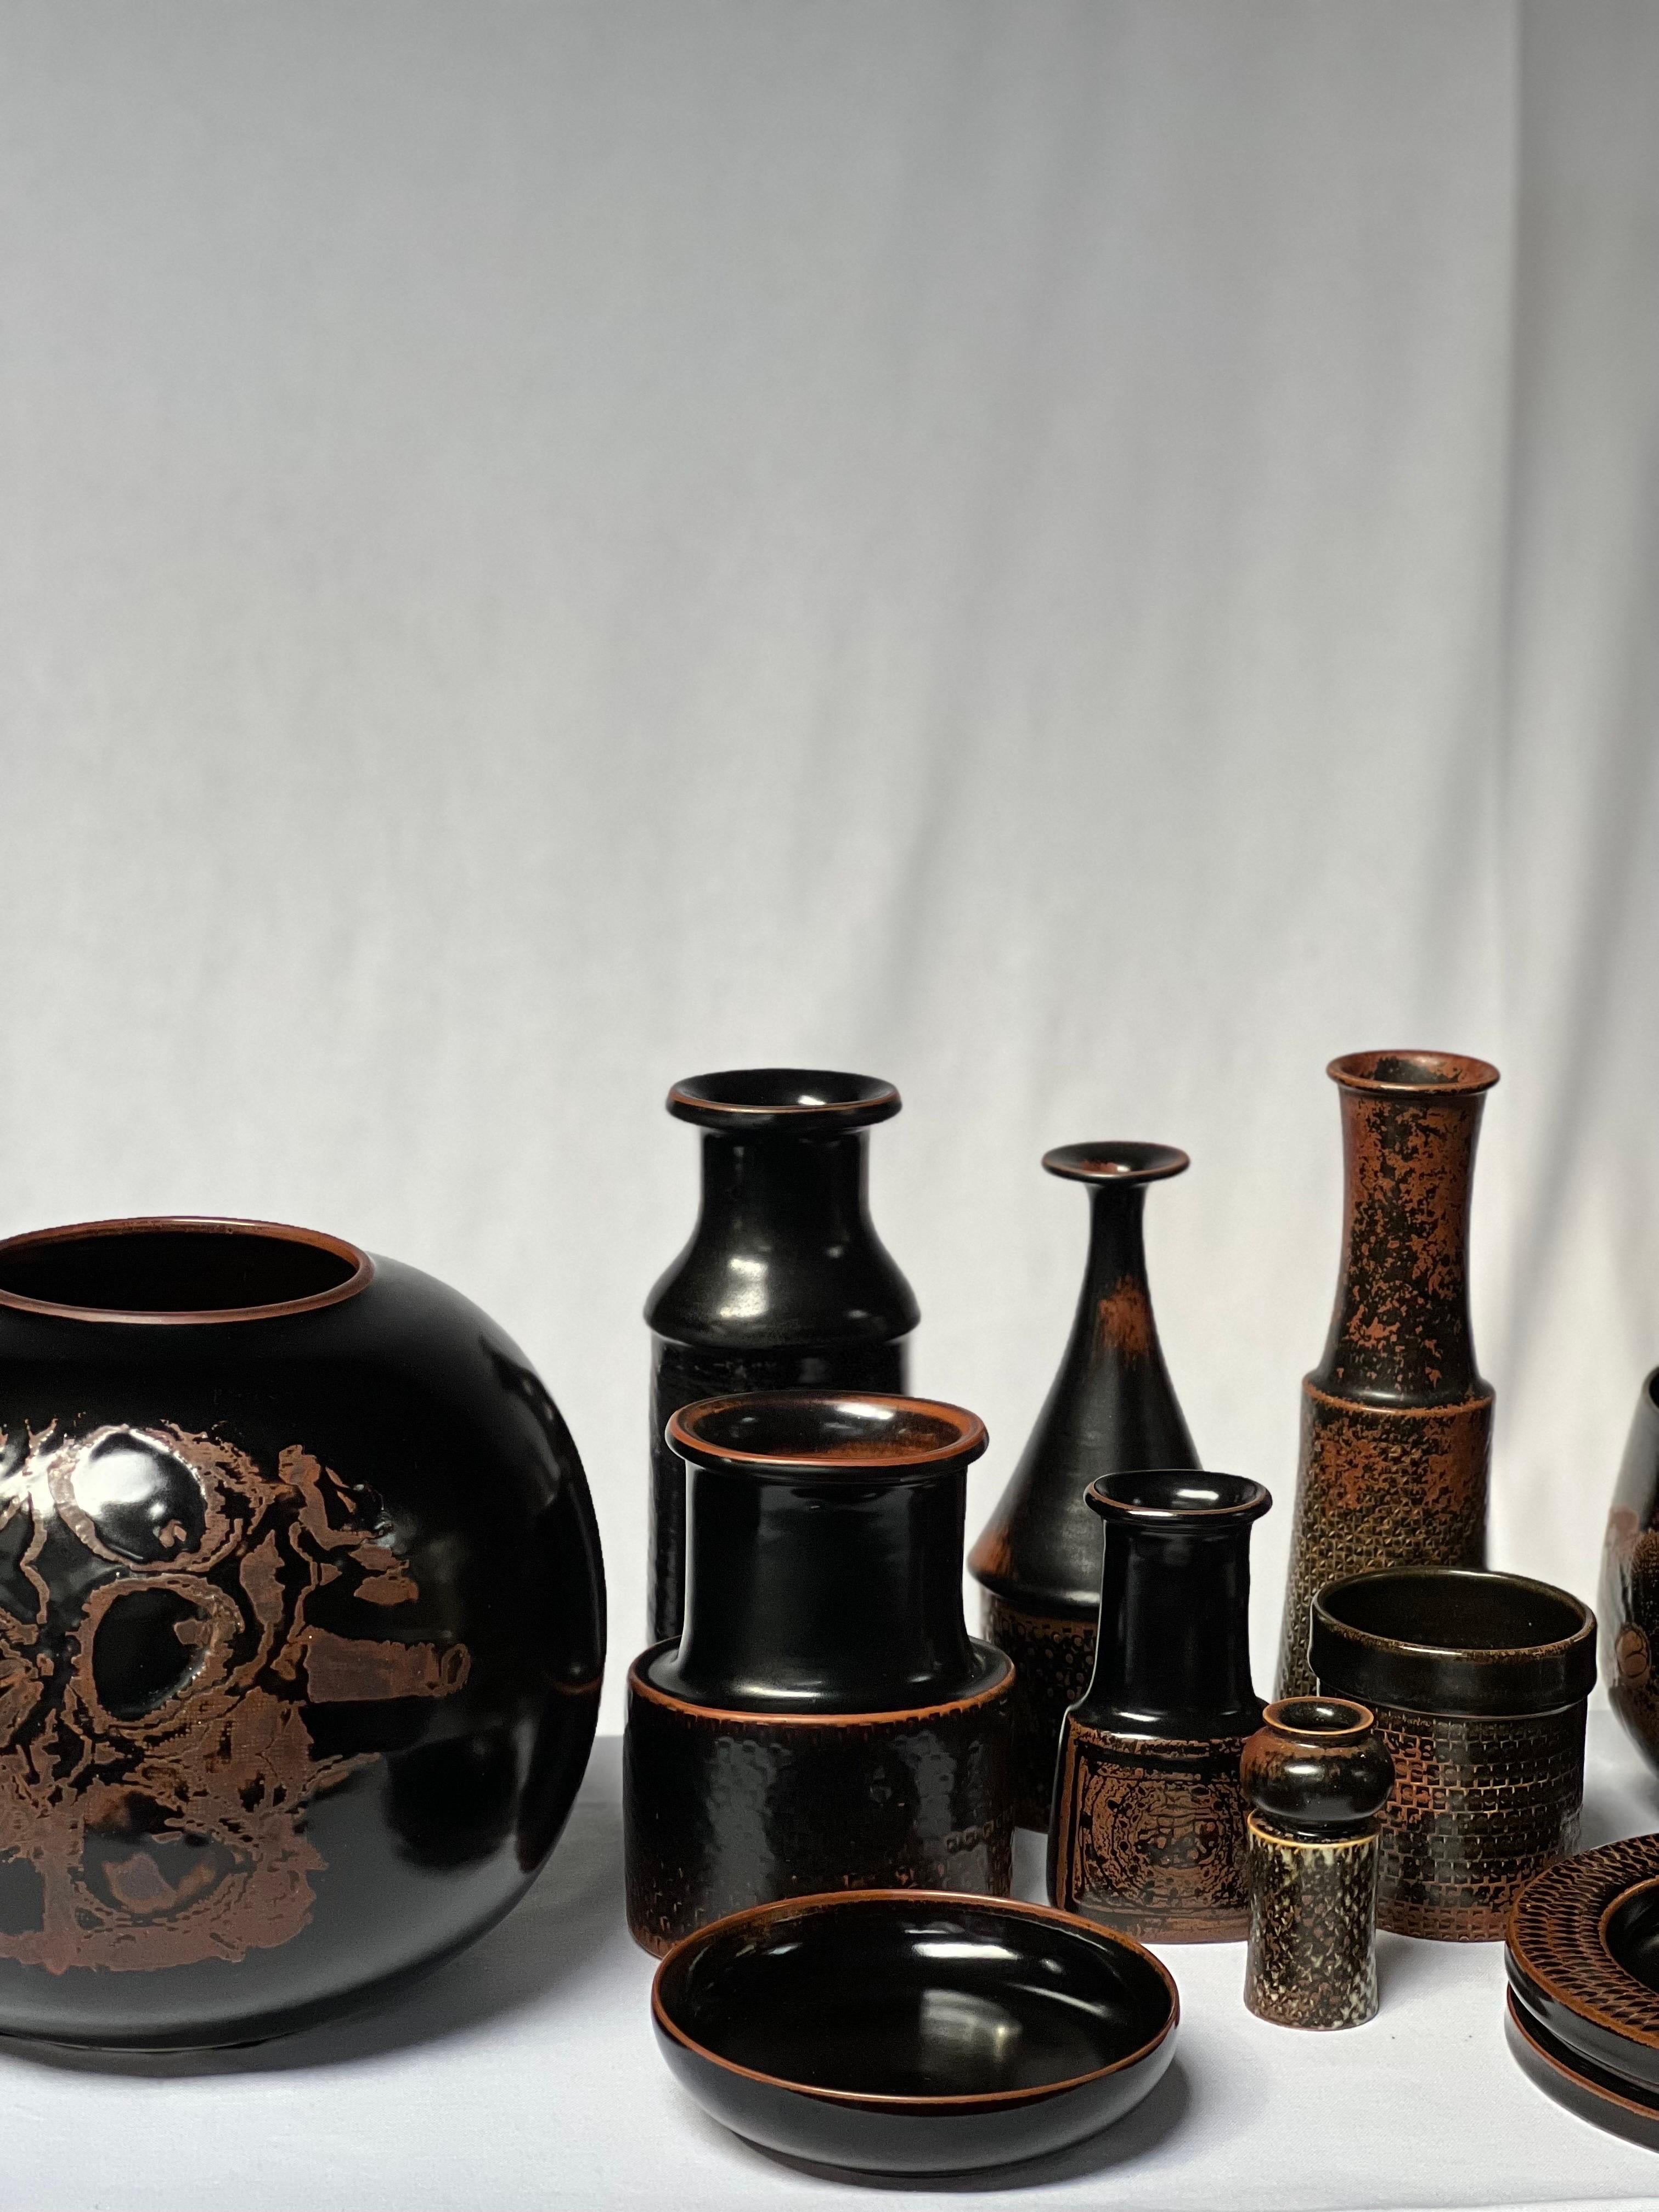 Ceramic Stig Lindberg Unique Vase in black Glaze Tenmoku Made by Hand Sweden 1968 For Sale